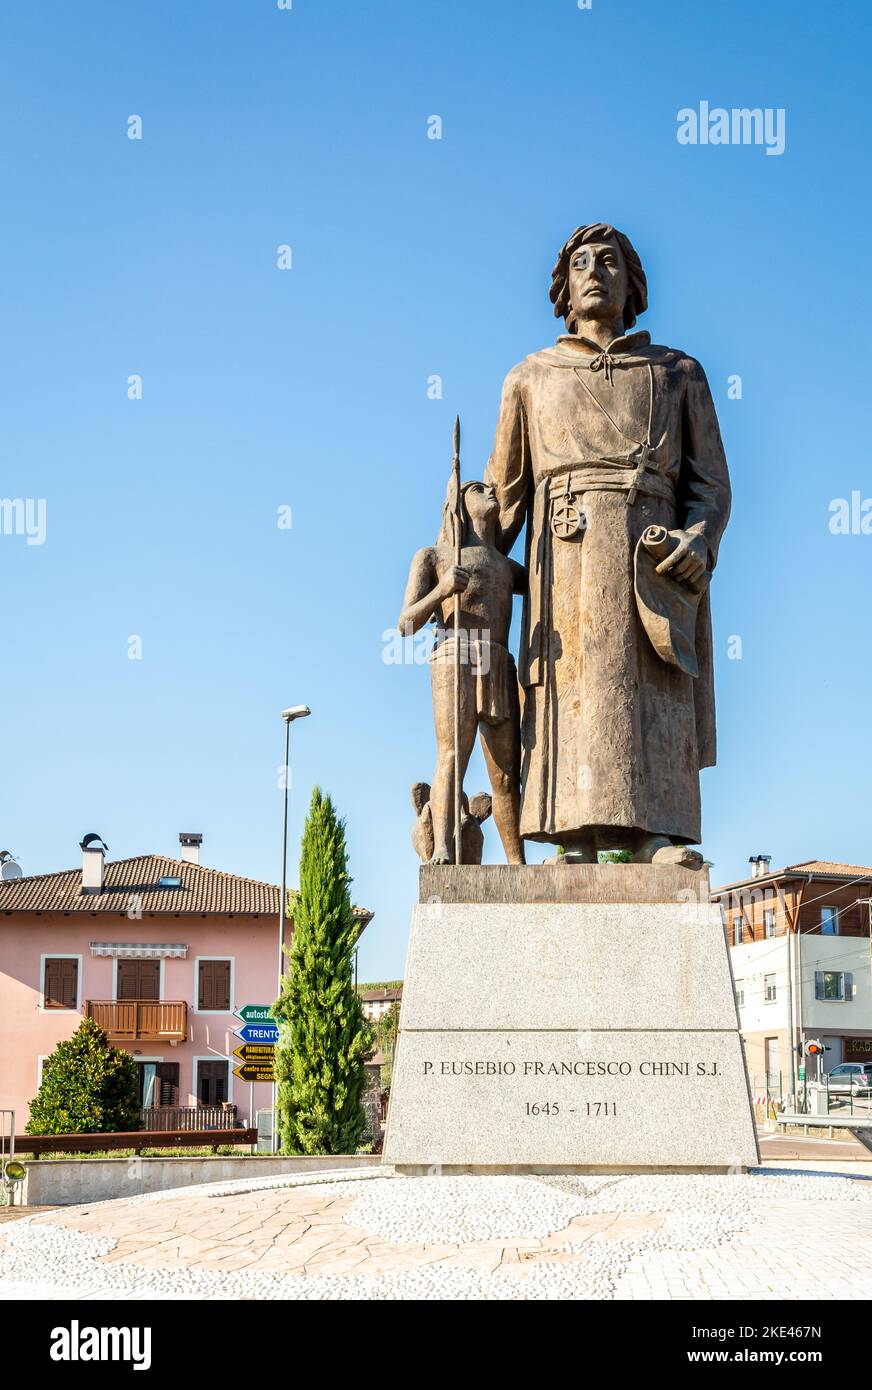 Statua bronzea di Eusebio Chini (Phater Kino) - 1645-1711. Segno,Predaia, Val di non, provincia di Trento,Trentino Alto Adige - Italia - 21 agosto 2020 Foto Stock